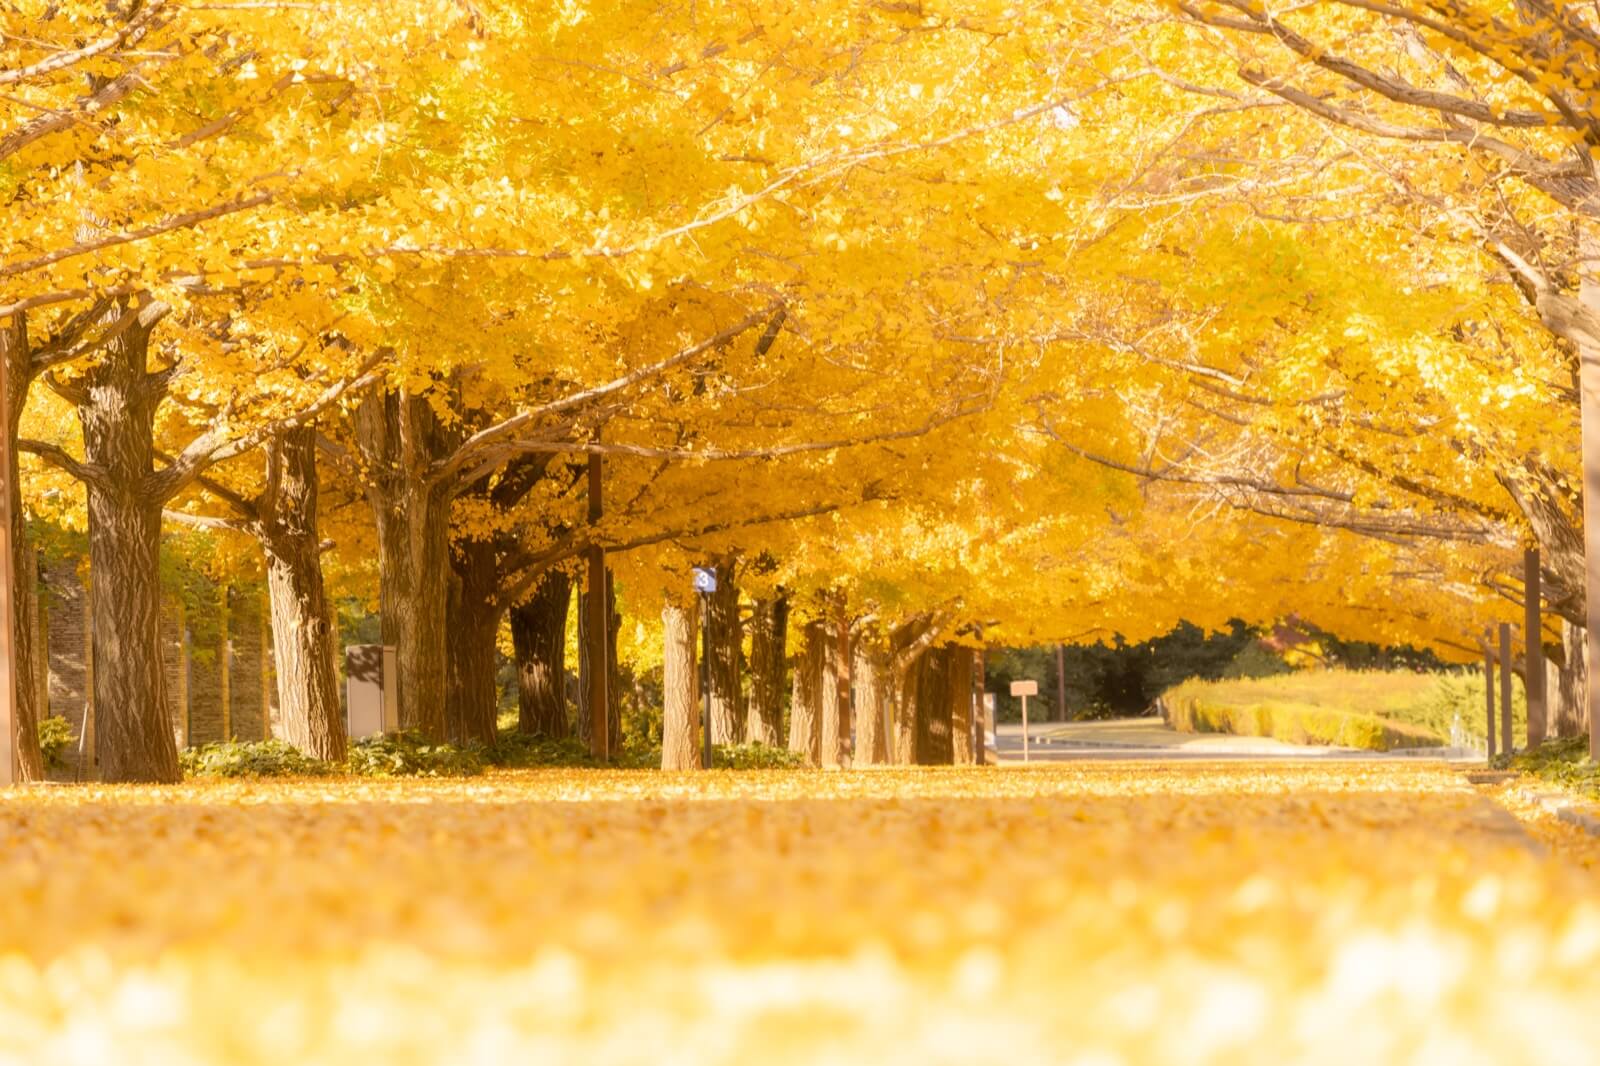 昭和記念公園でイチョウ(銀杏)並木の紅葉写真を開園ダッシュで撮影 